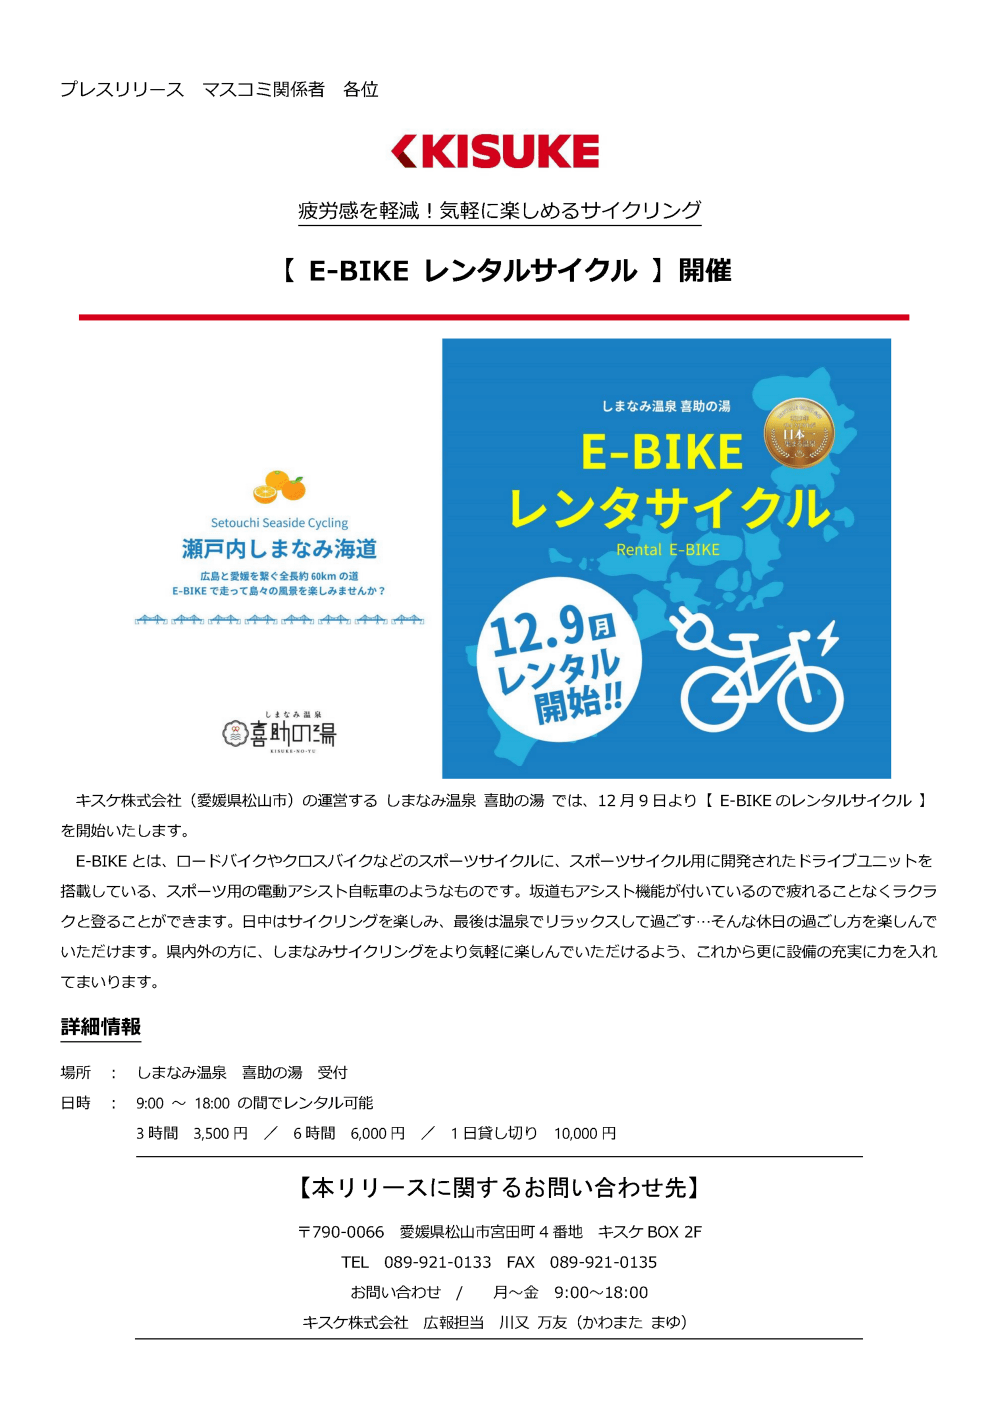 キスケ株式会社（愛媛県松山市）の運営するしまなみ温泉喜助の湯では、12月9日より【E-BIKEのレンタルサイクル】を開始いたします。E-BIKEとは、ロードバイクやクロスバイクなどのスポーツサイクルに、スポーツサイクル用に開発されたドライブユニットを搭載している、スポーツ用の電動アシスト自転車のようなものです。坂道もアシスト機能が付いているので疲れることなくラクラクと登ることができます。日中はサイクリングを楽しみ、最後は温泉でリラックスして過ごす…そんな休日の過ごし方を楽しんでいただけます。県内外の方に、しまなみサイクリングをより気軽に楽しんでいただけるよう、これから更に設備の充実に力を入れてまいります。 